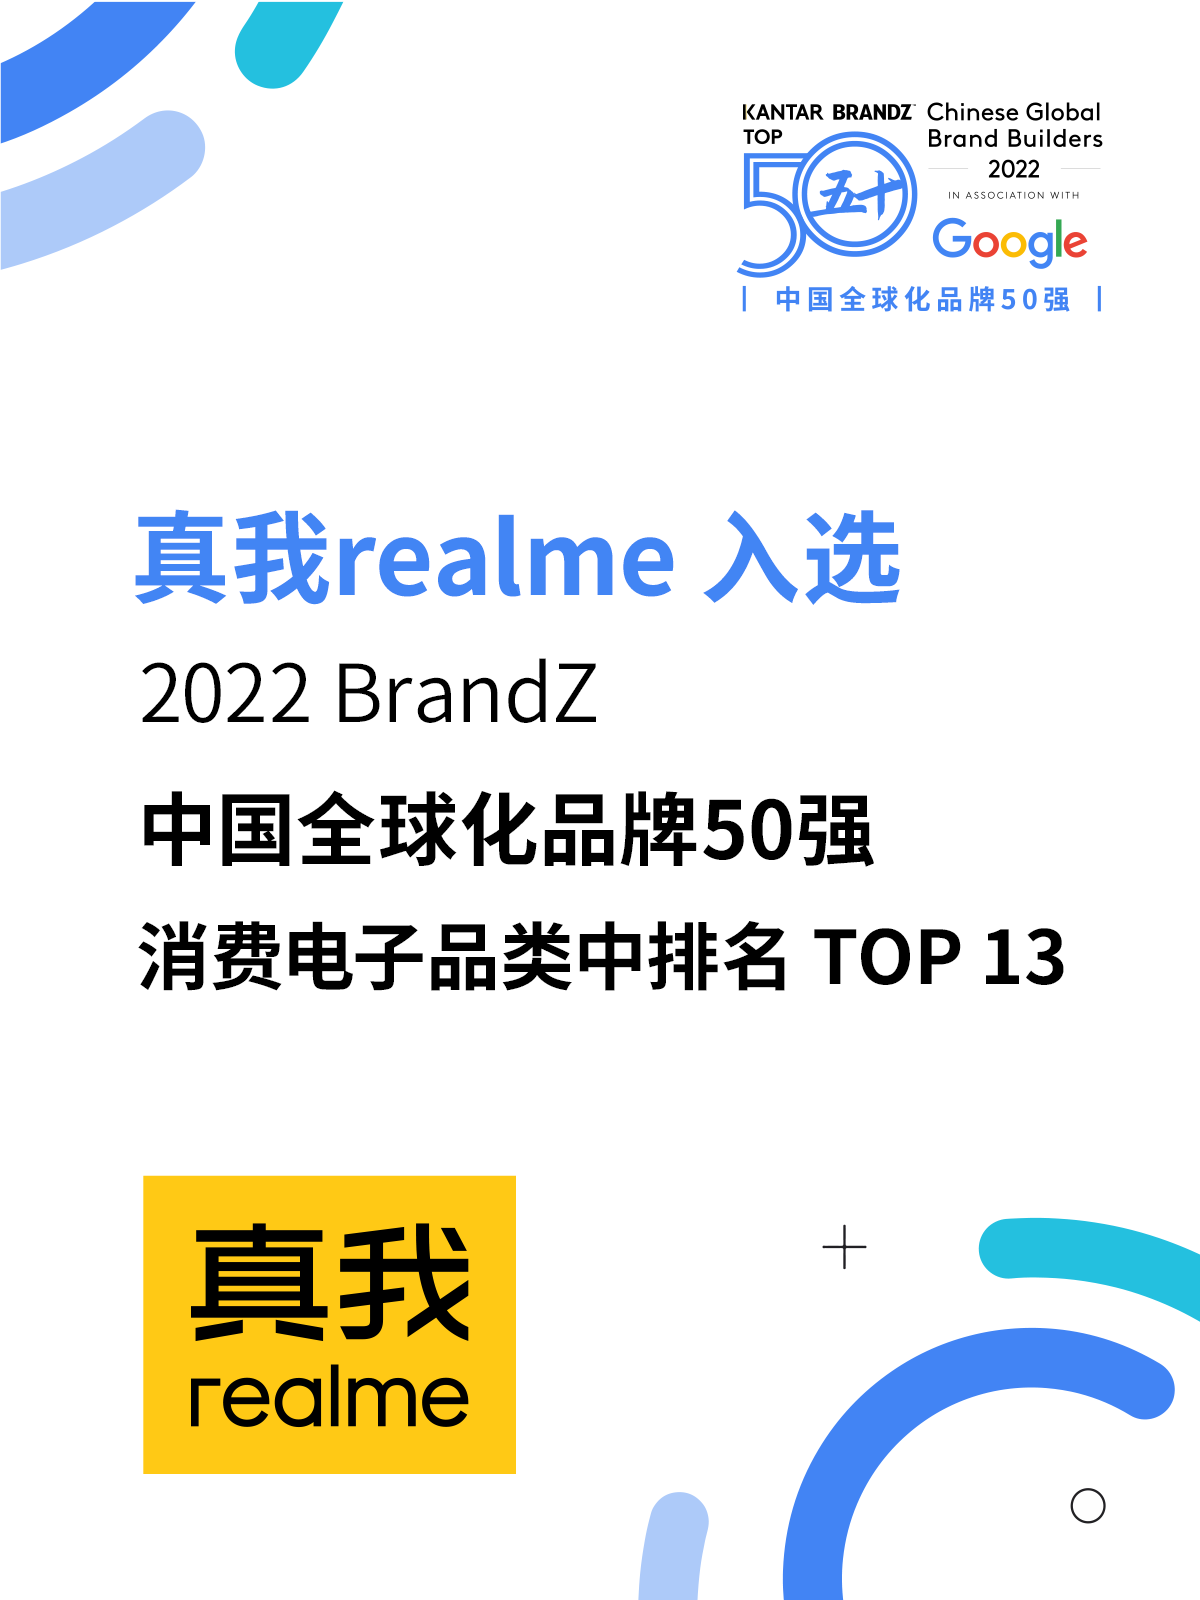 品牌势能辐射全球 真我 realme 登榜 2022 年 BrandZ 中国全球化品牌 50 强